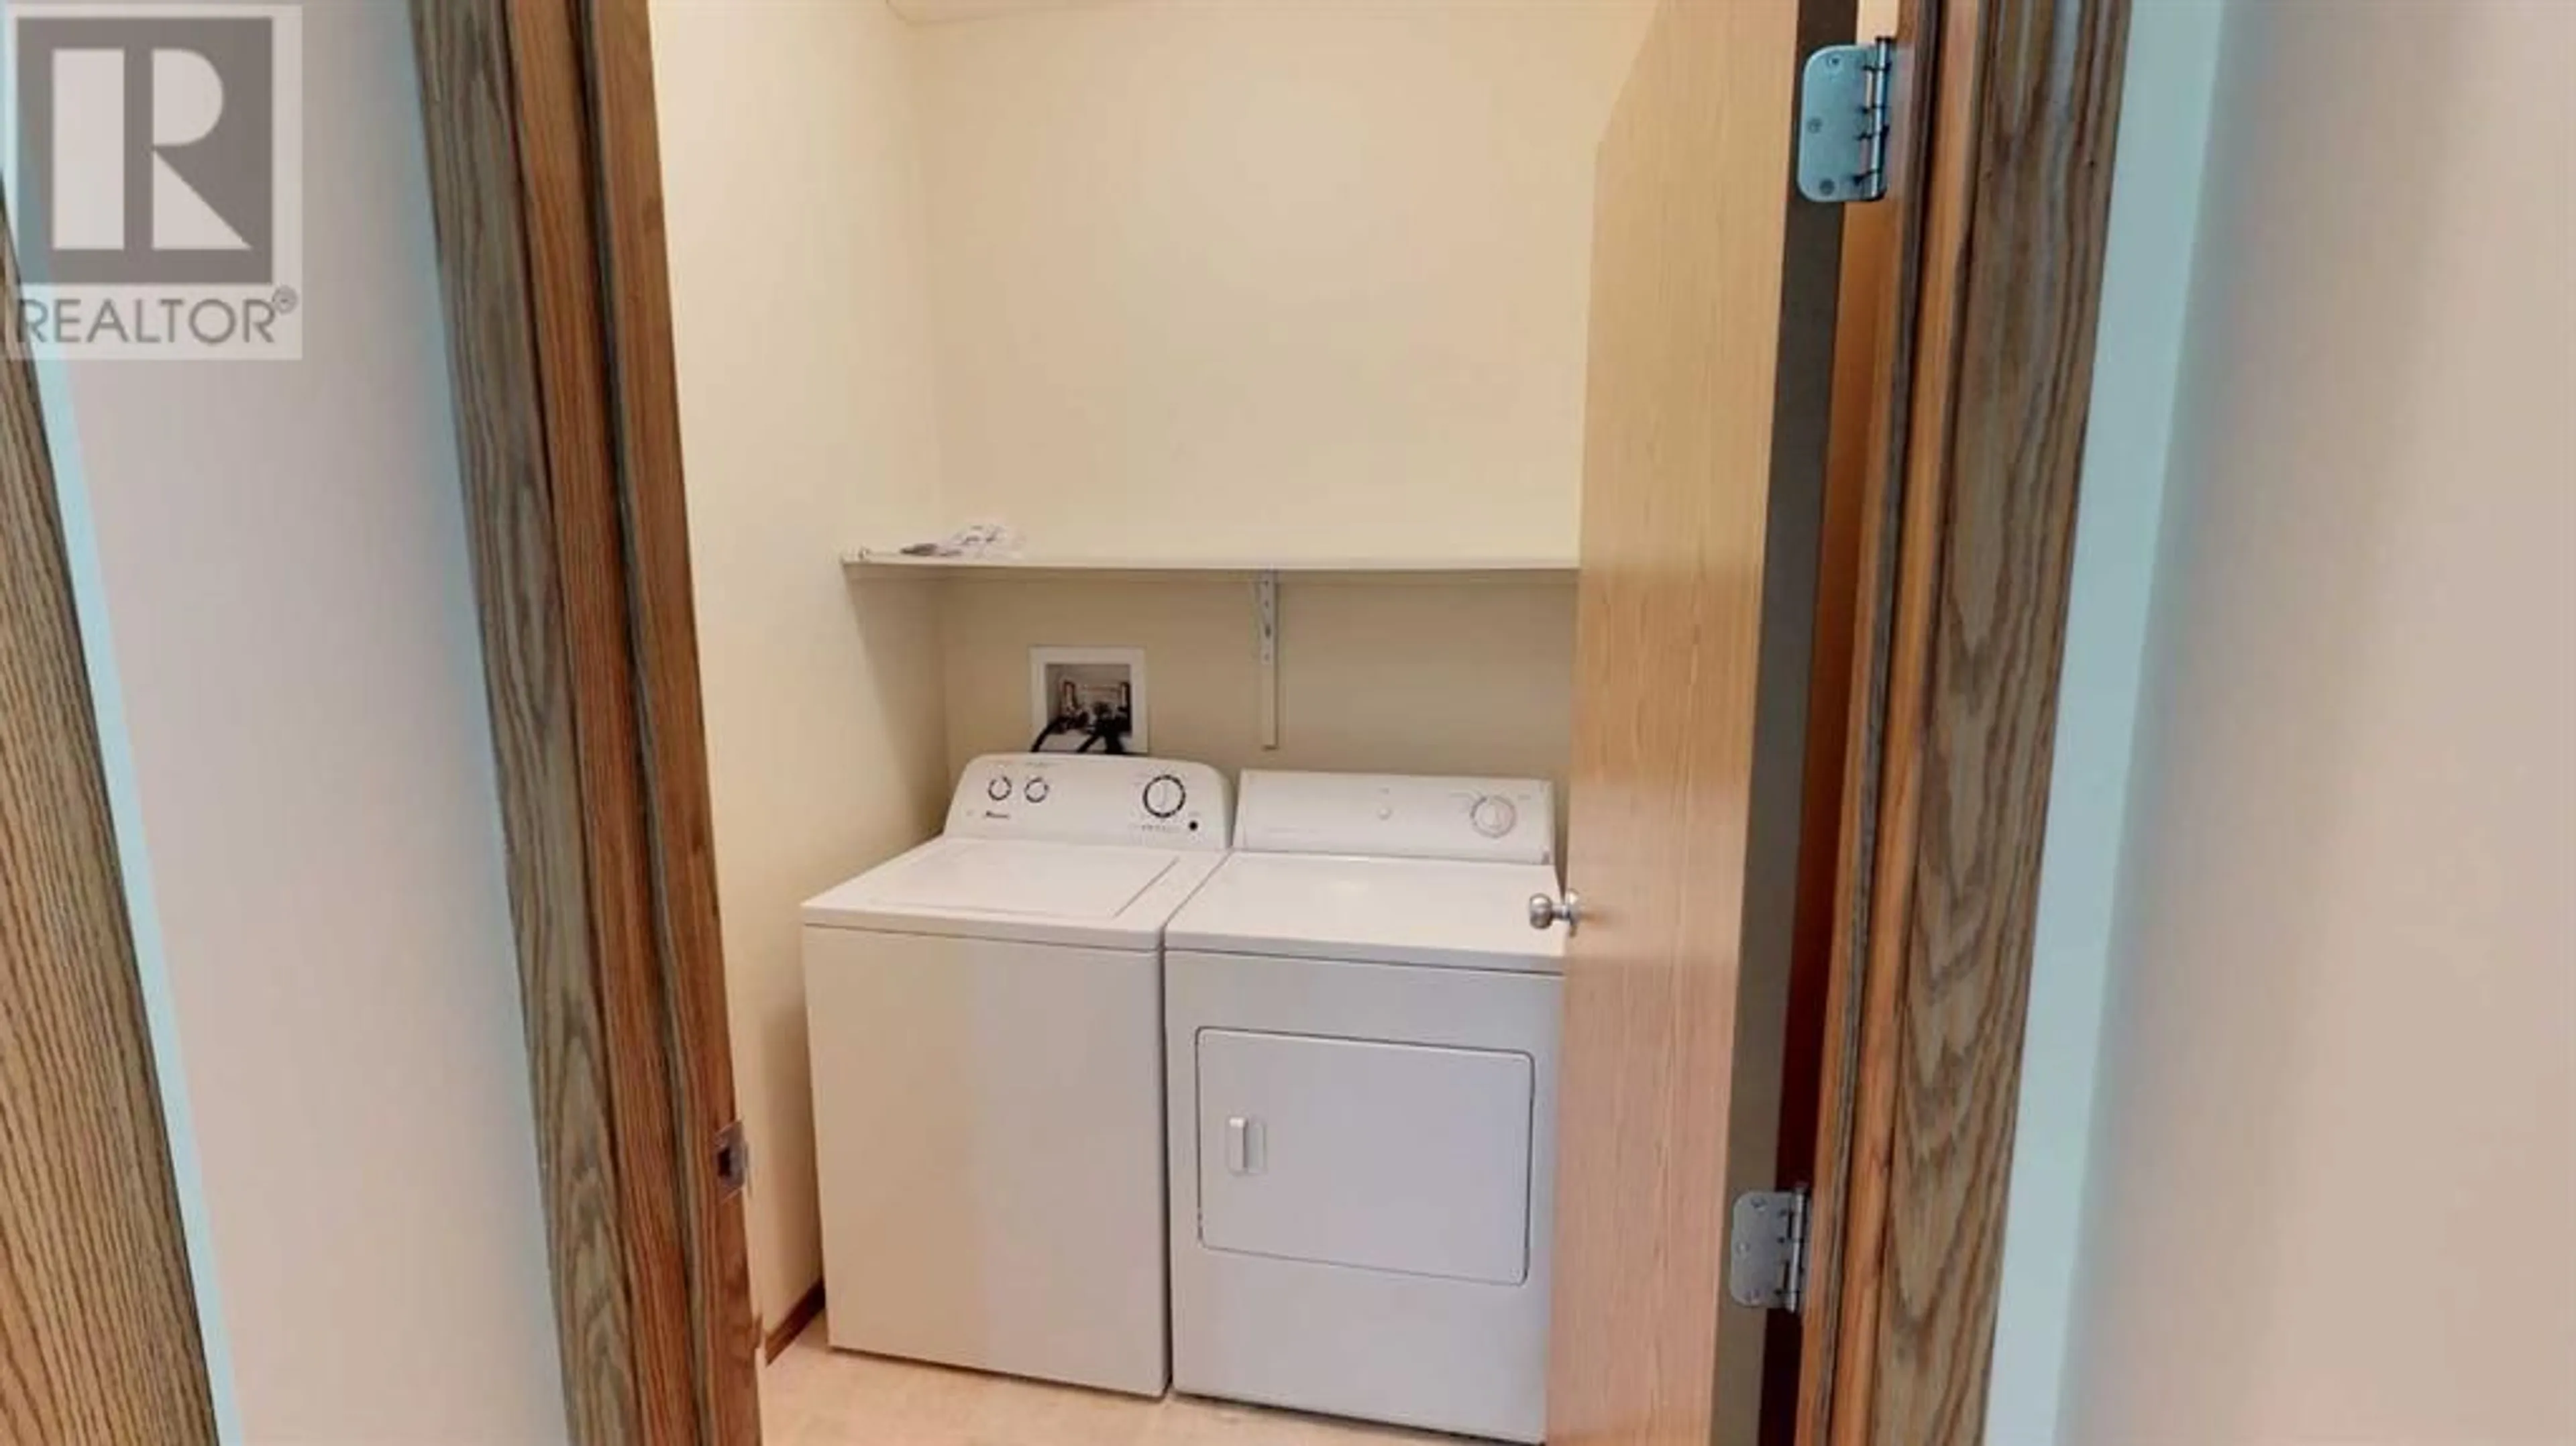 Laundry room for 108 12025 Royal Oaks Drive, Grande Prairie Alberta T8V2K8